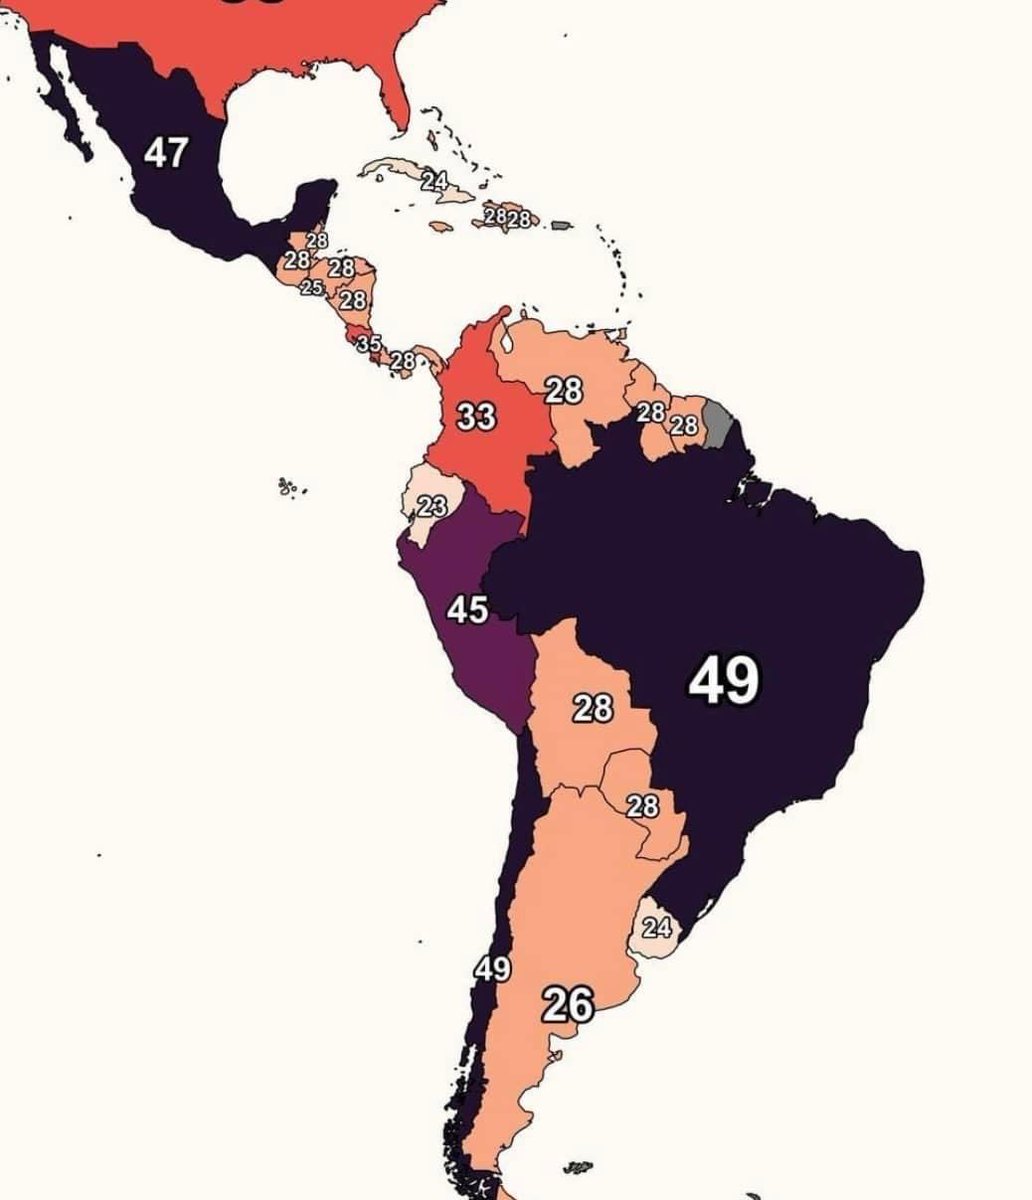 Porcentaje de la riqueza total que posee el 1% más rico de la población en cada país de América Latina y el Caribe.

Fuente: world inequality database en 2021